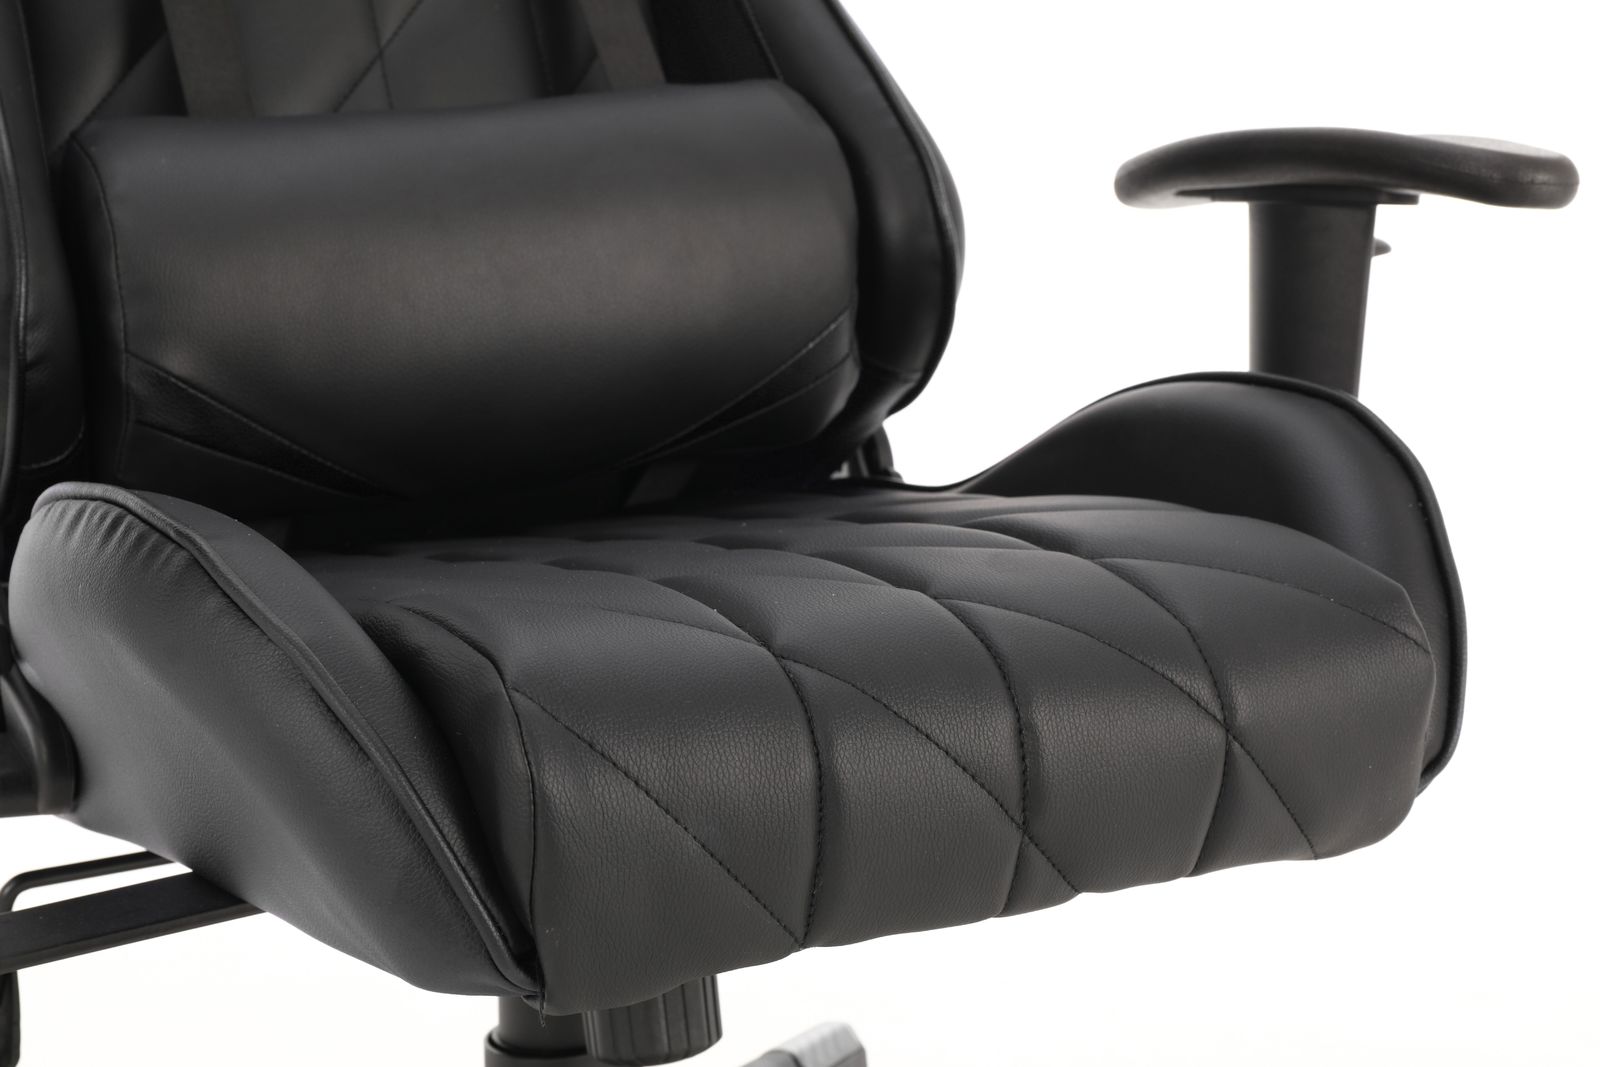 Playmax Elite Gaming Chair - Black